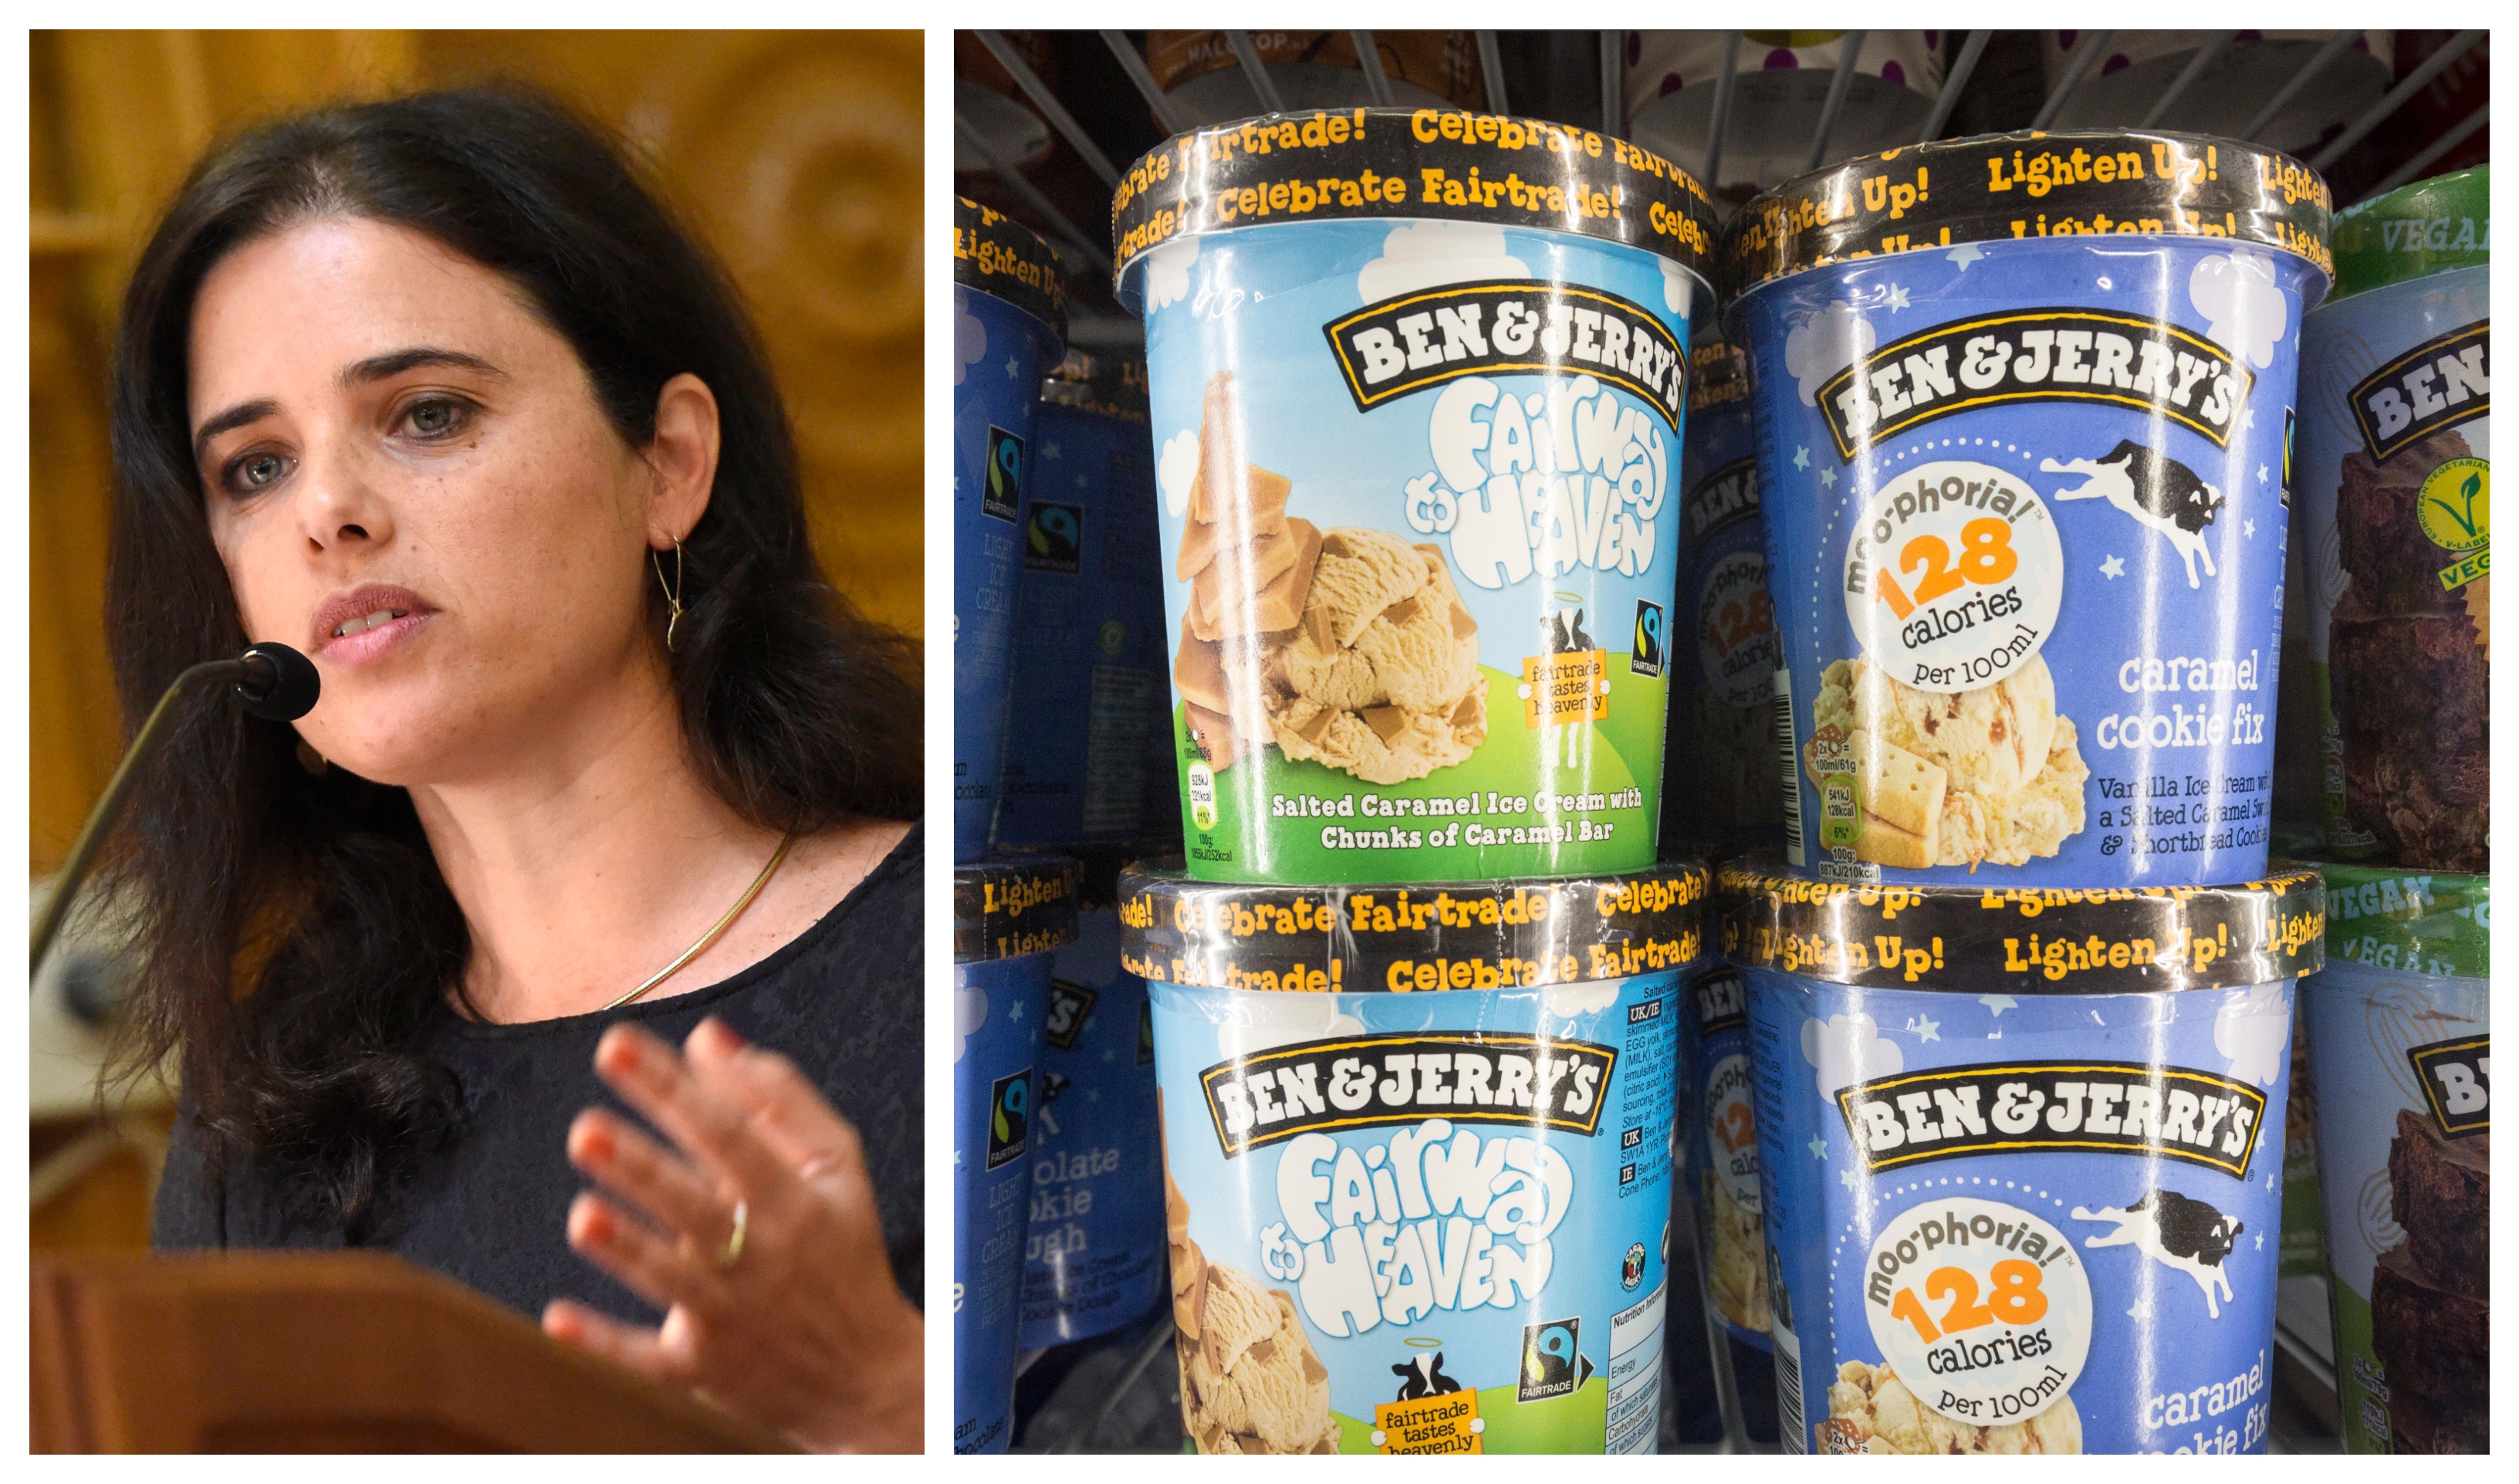 Ben & Jerry's stoppar försäljningen av glass i flera områden i Israel.